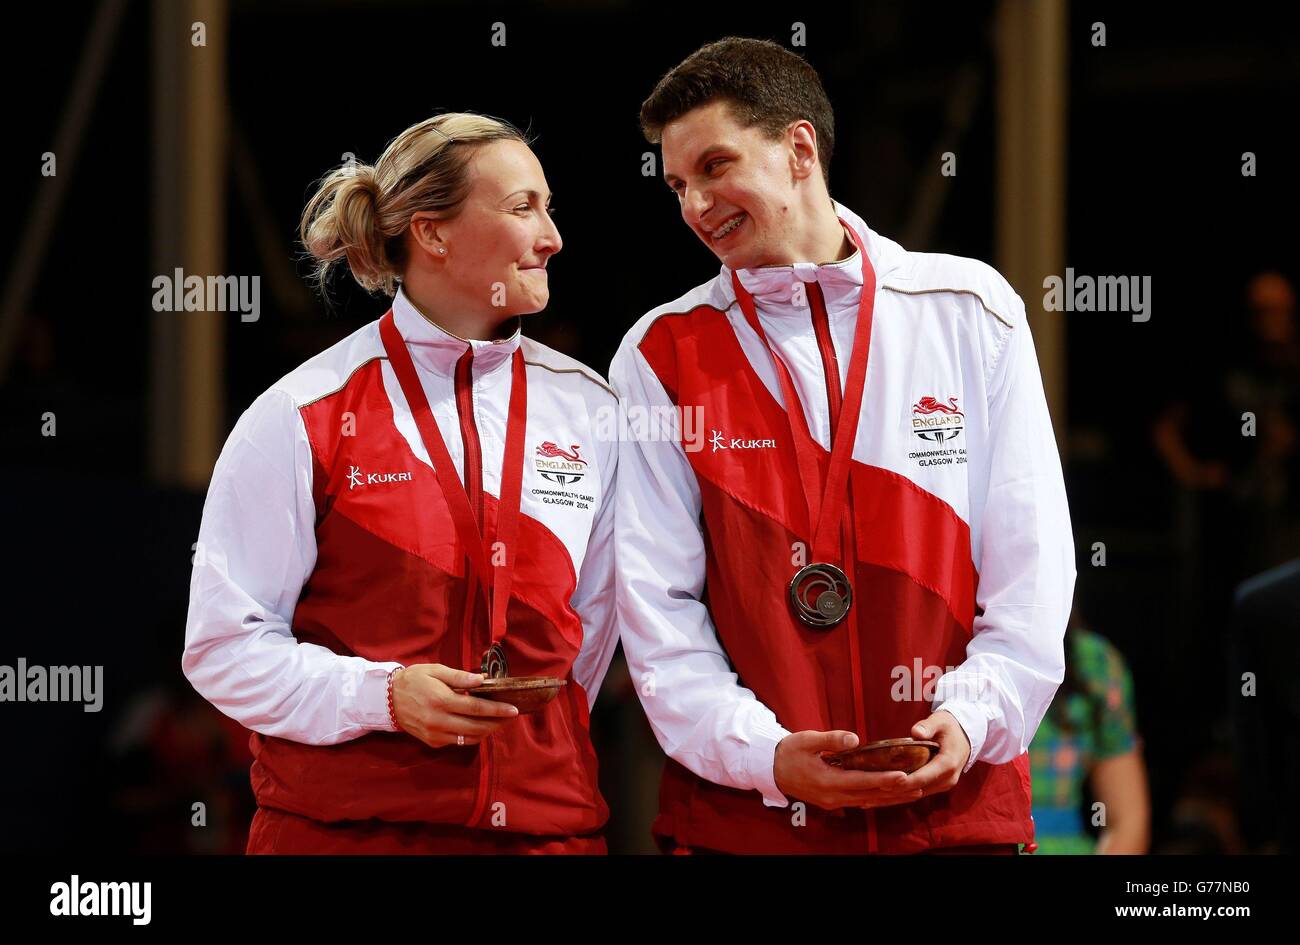 Kelly Sibley e Danny Reed in Inghilterra con le loro medaglie di bronzo hanno vinto nella partita della medaglia di bronzo al Mixed Doubles Table Tennis presso lo Scotstoun Sports Campus, durante i Giochi del Commonwealth 2014 a Glasgow. Foto Stock